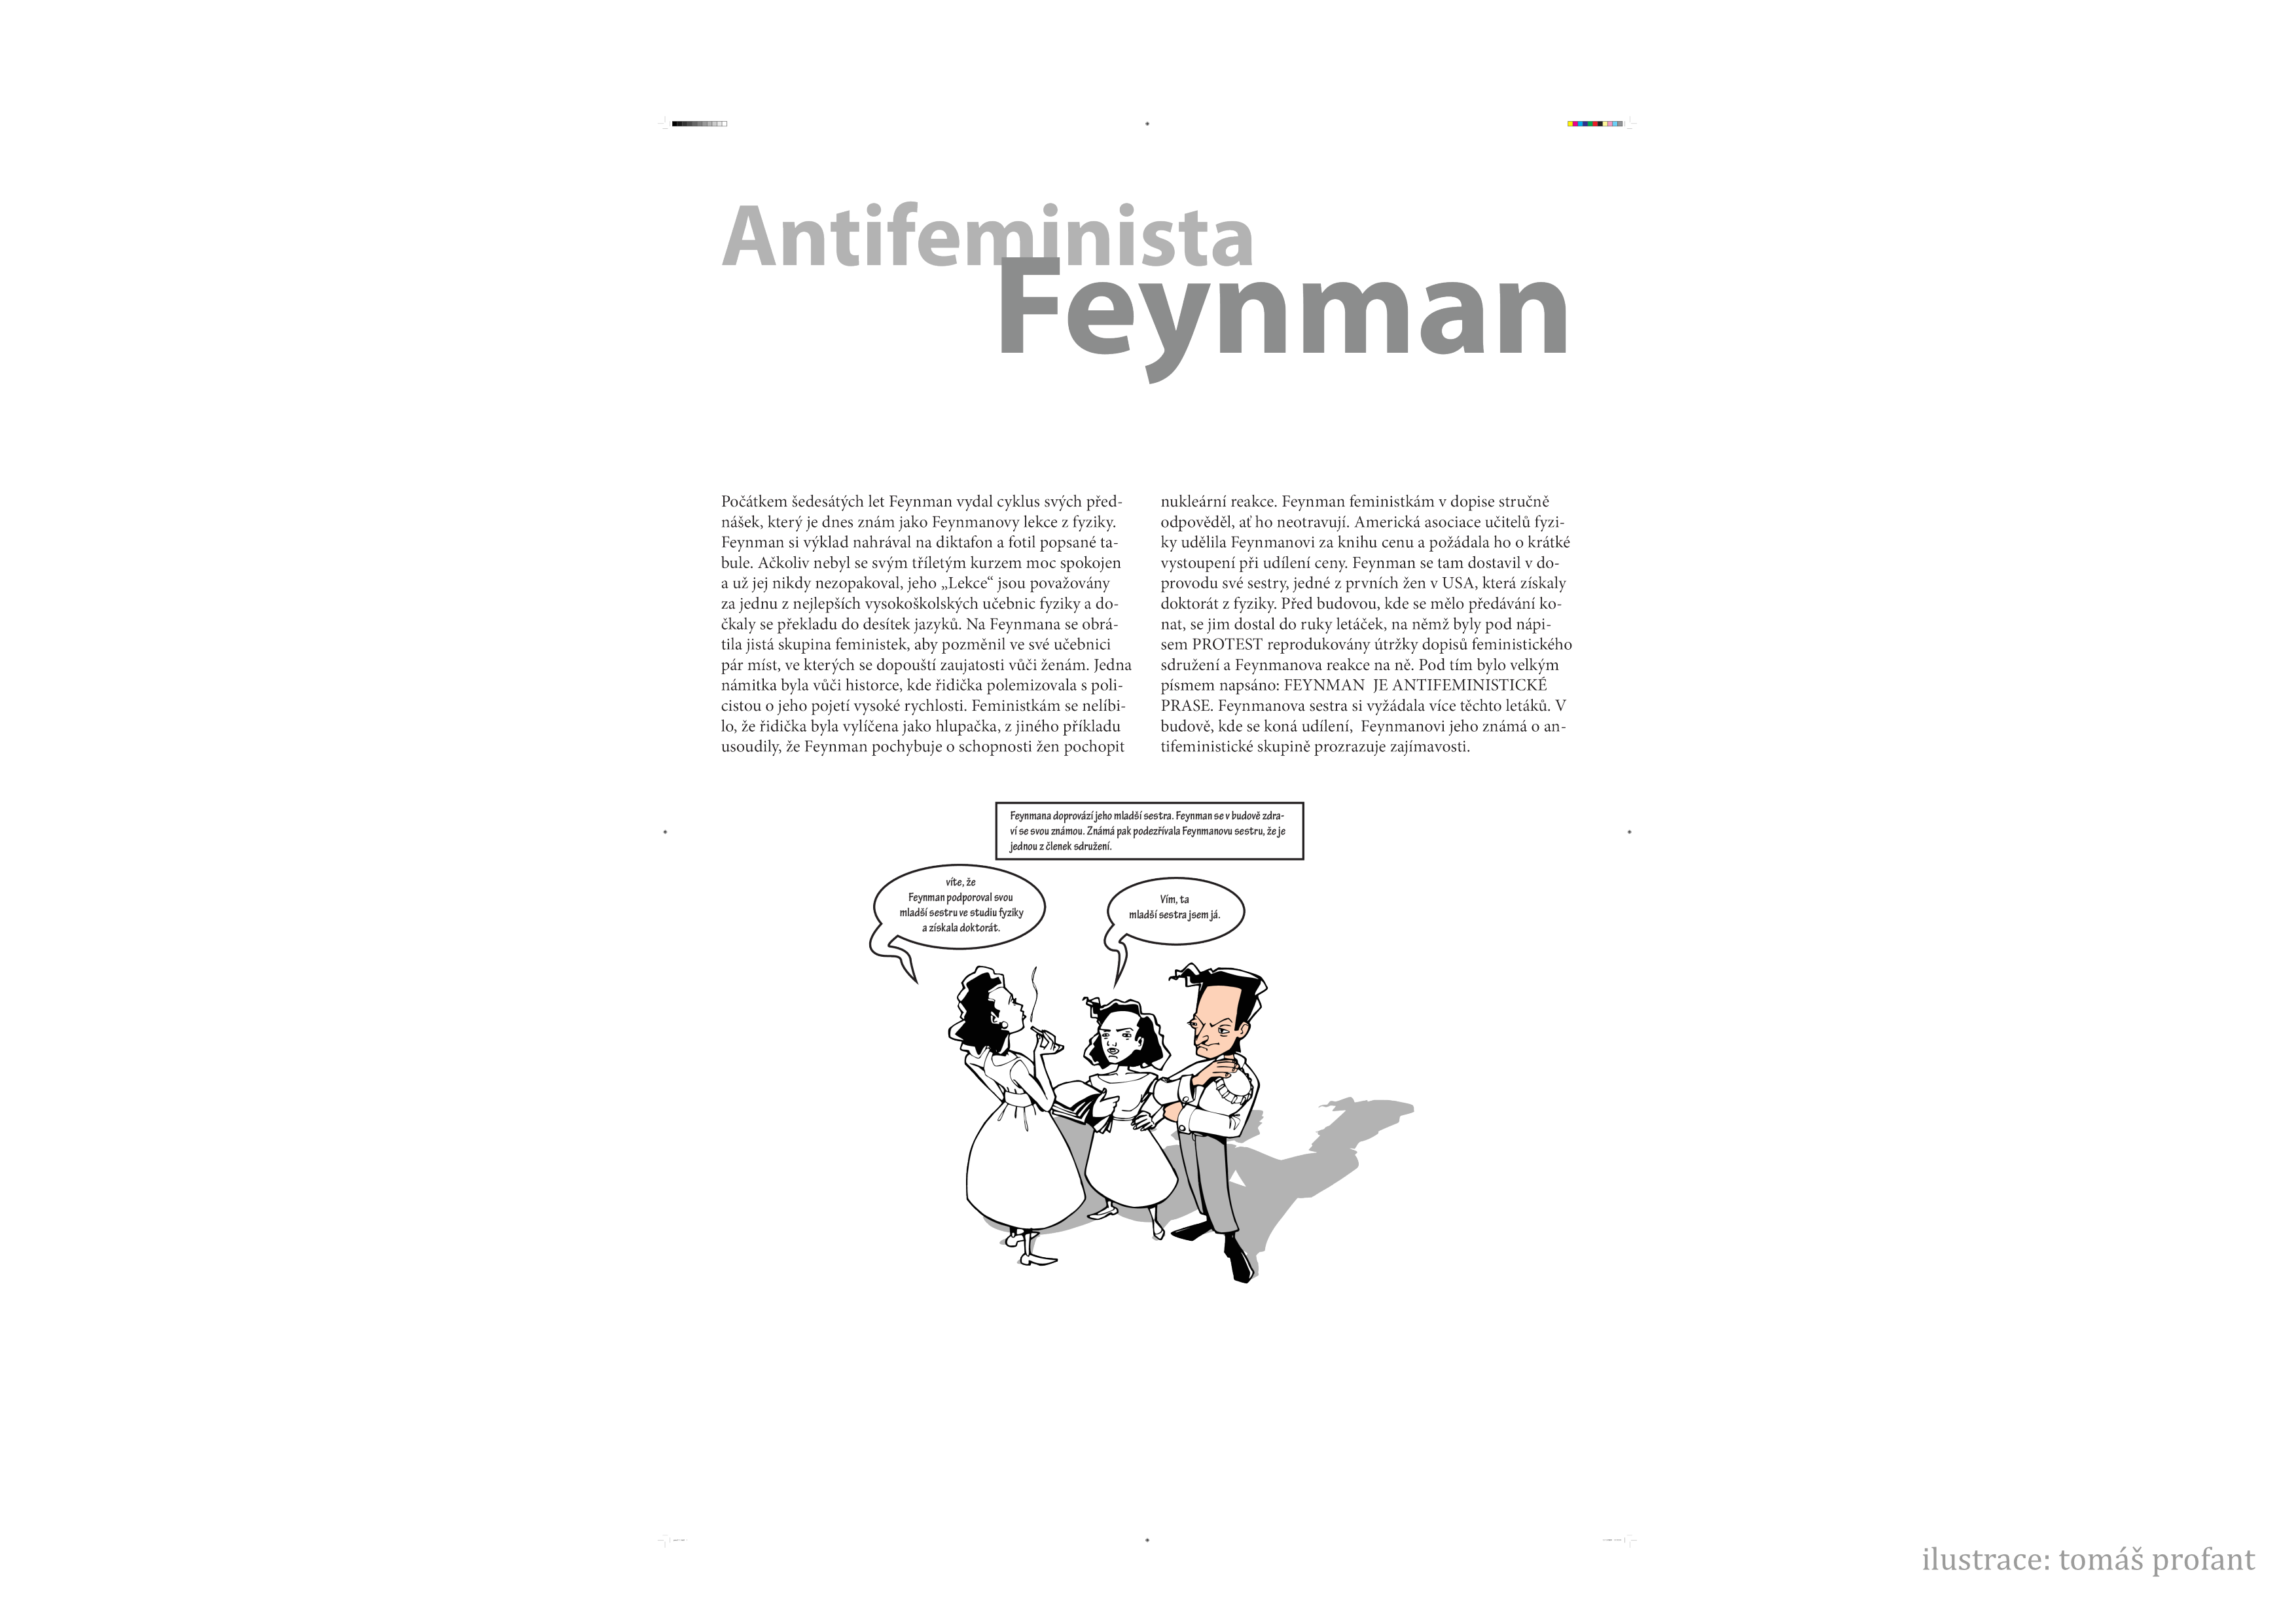 _images/feynman-str%C3%A1nka011.png